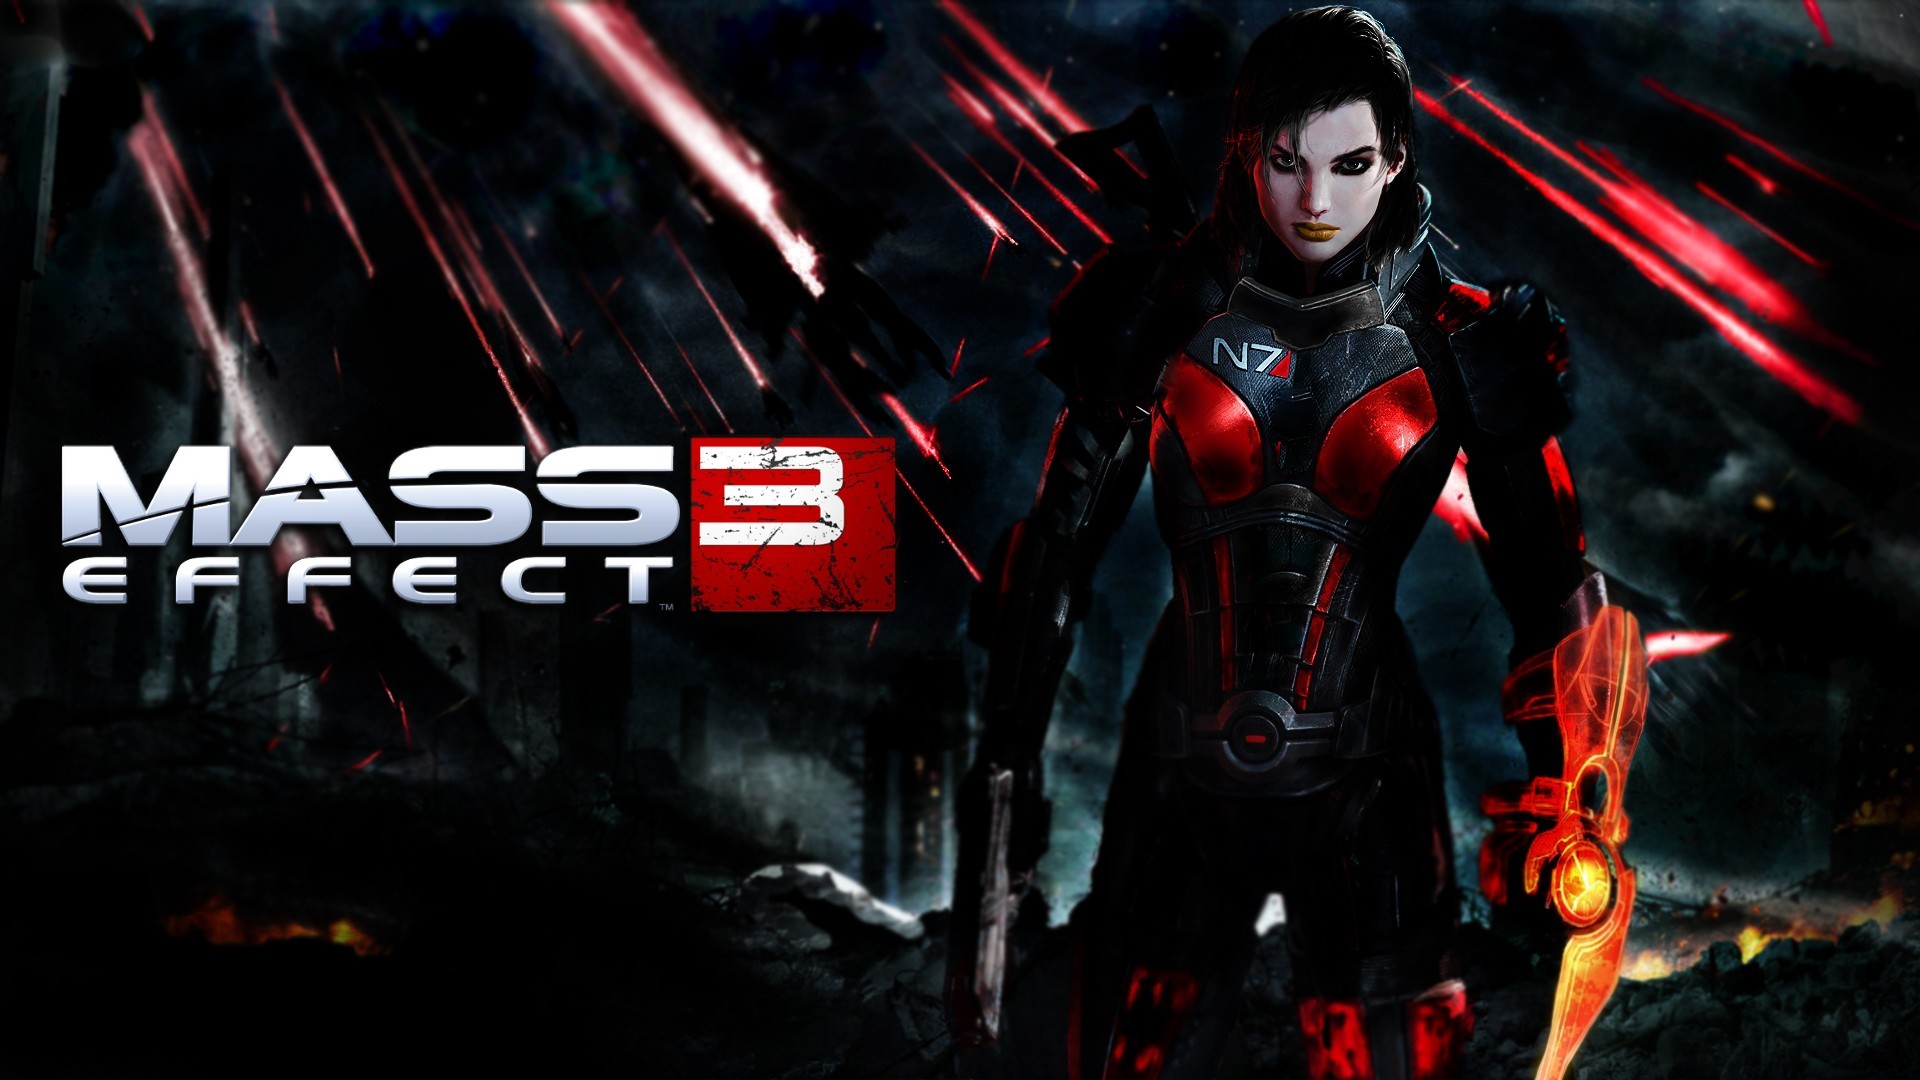 1920x1080 BioWare | Mass Effect | Images Mass Effect 3 Desktop Backgrounds ...